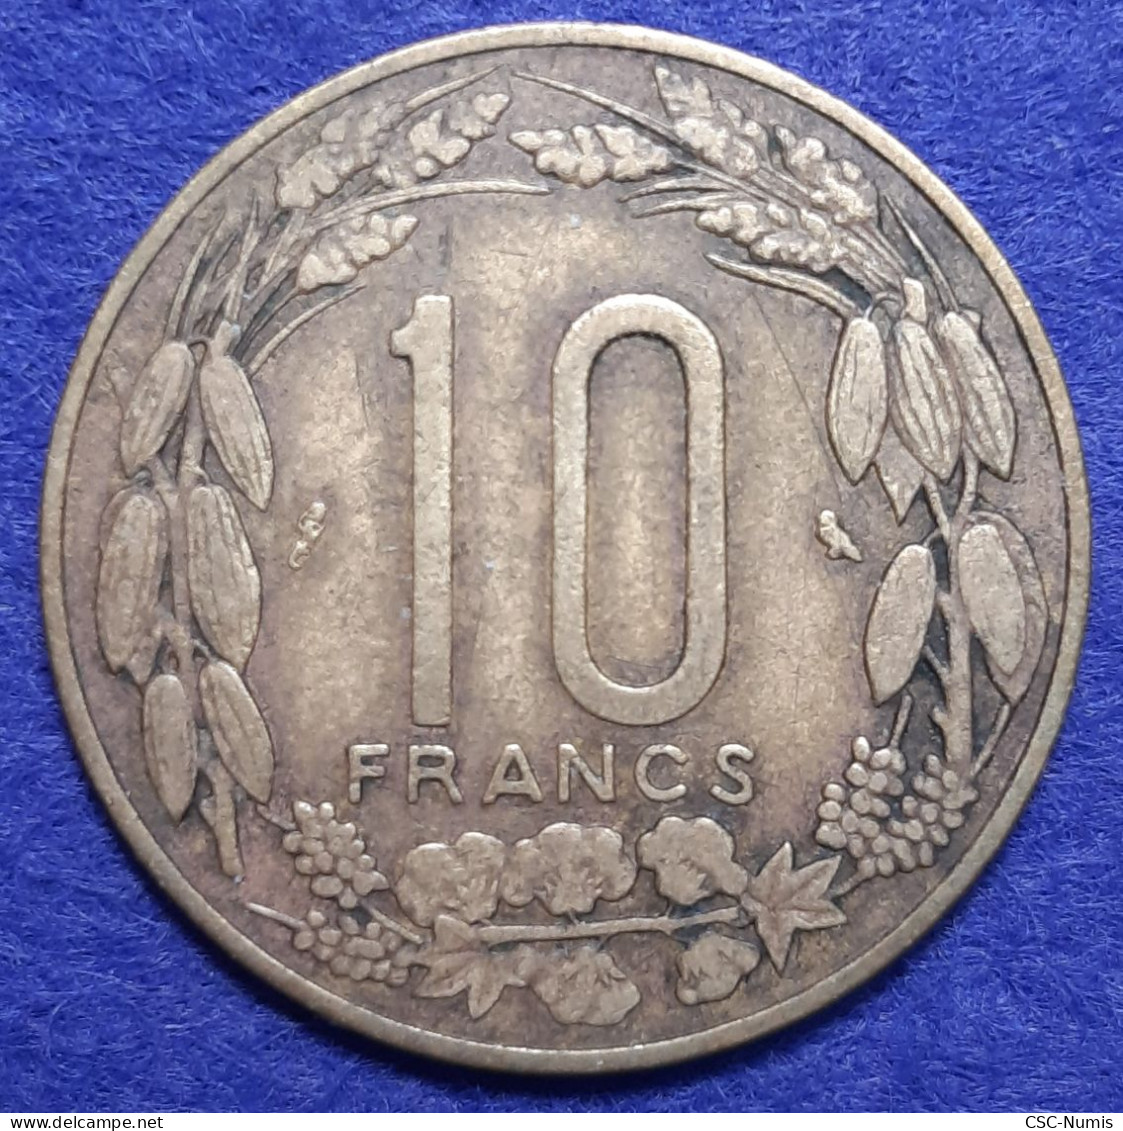 (CG#102) - Cameroun - 10 Francs 1961 - Kamerun